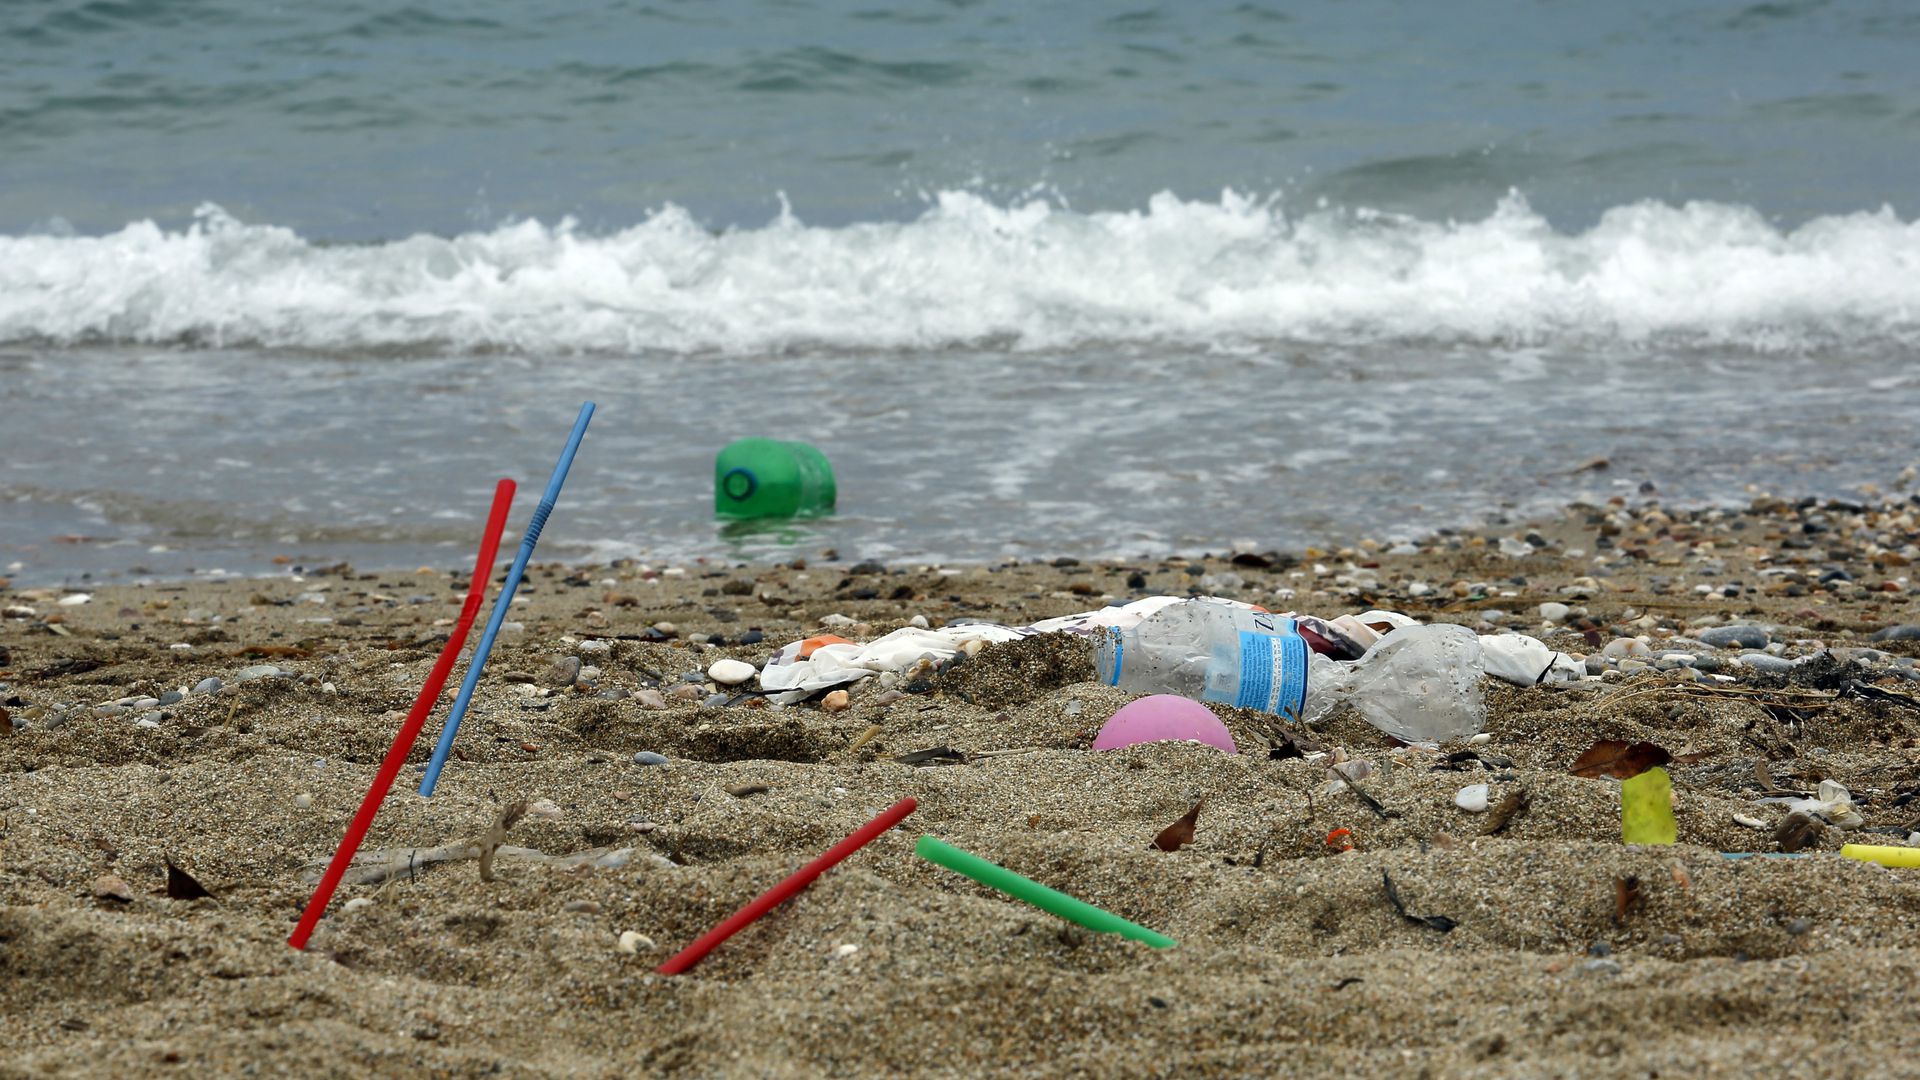 Ống hút nhựa dùng một lần chính là thủ phạm góp phần gây nên vấn nạn rác thải nhựa trên biển - Ảnh: Milos Bicanski/Getty Images